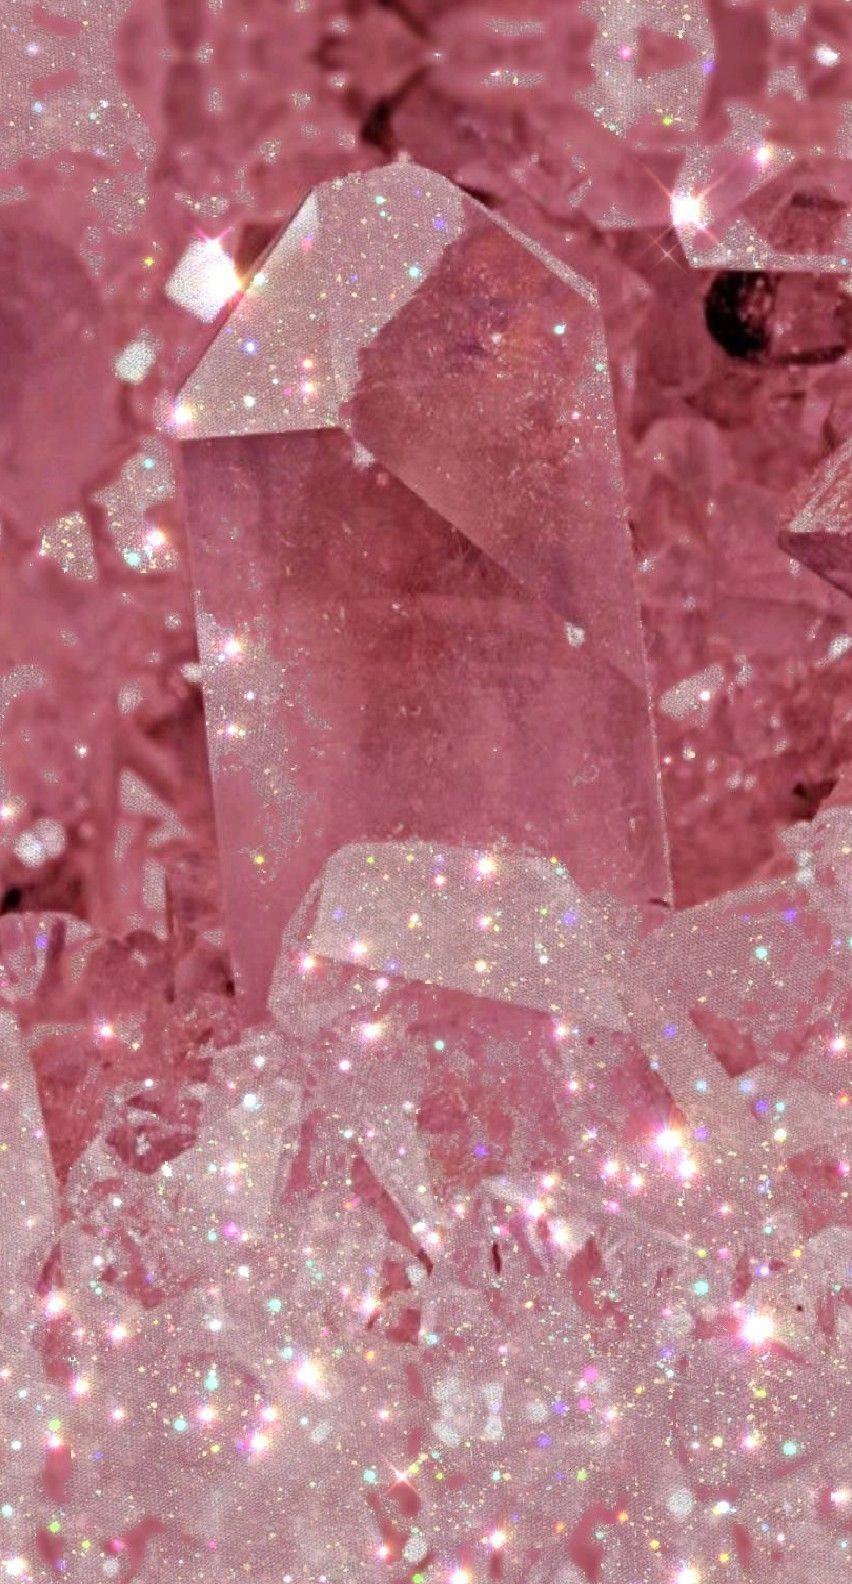  Glitzer Schöne Hintergrundbild 852x1584. Glitter Minerals. Wallpaper achtergronden, Roze achtergronden, Roze achtergrond